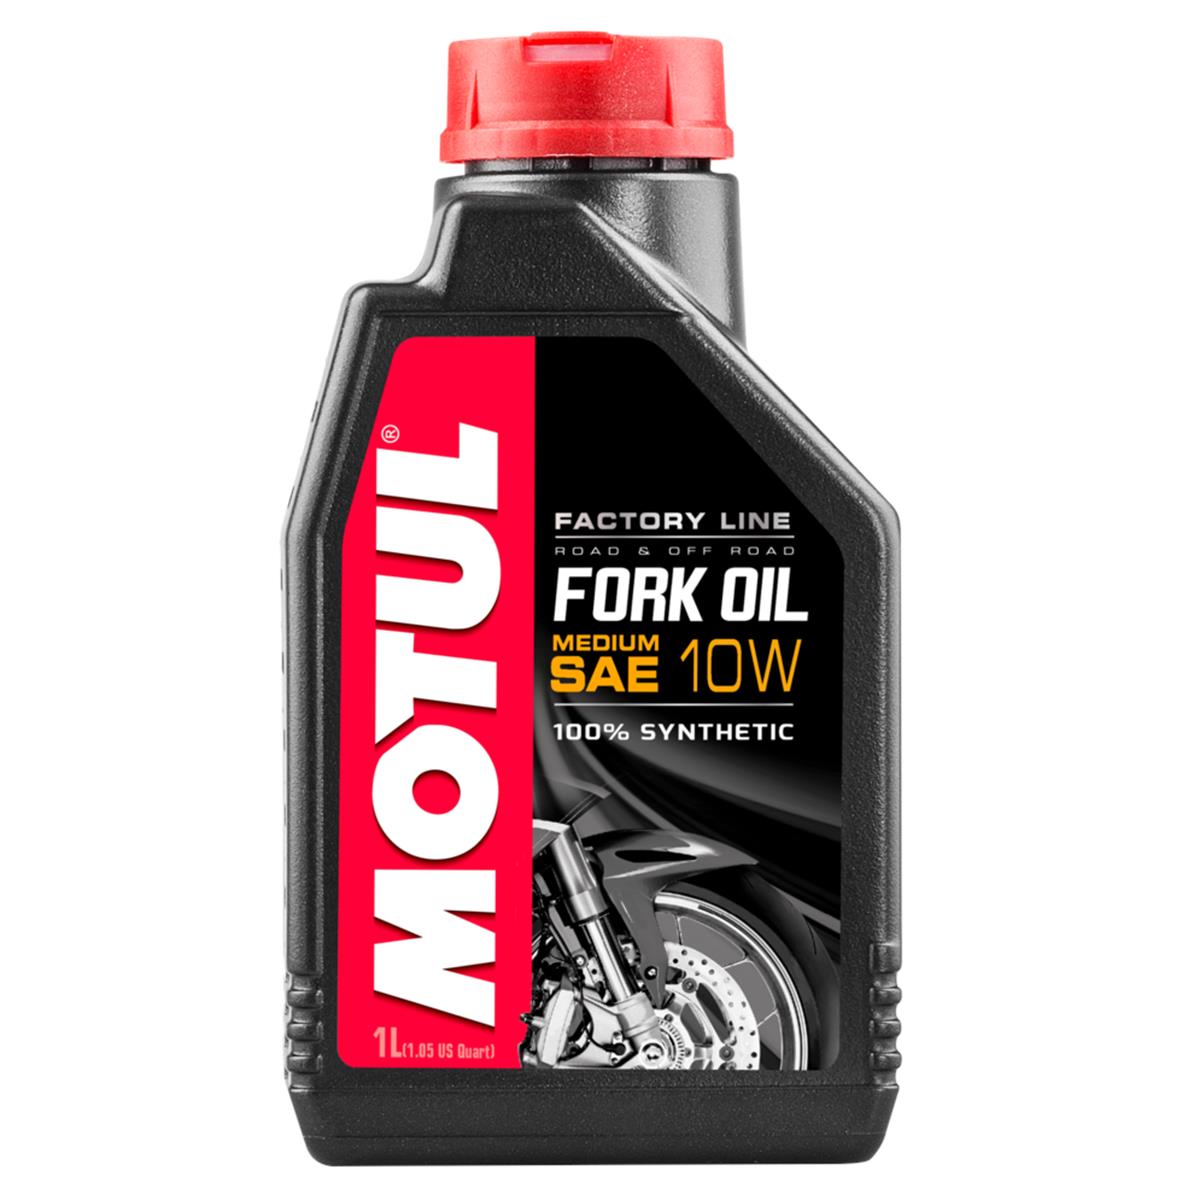 Motul Fork Oil Factory Line Medium, 10W, 1 L